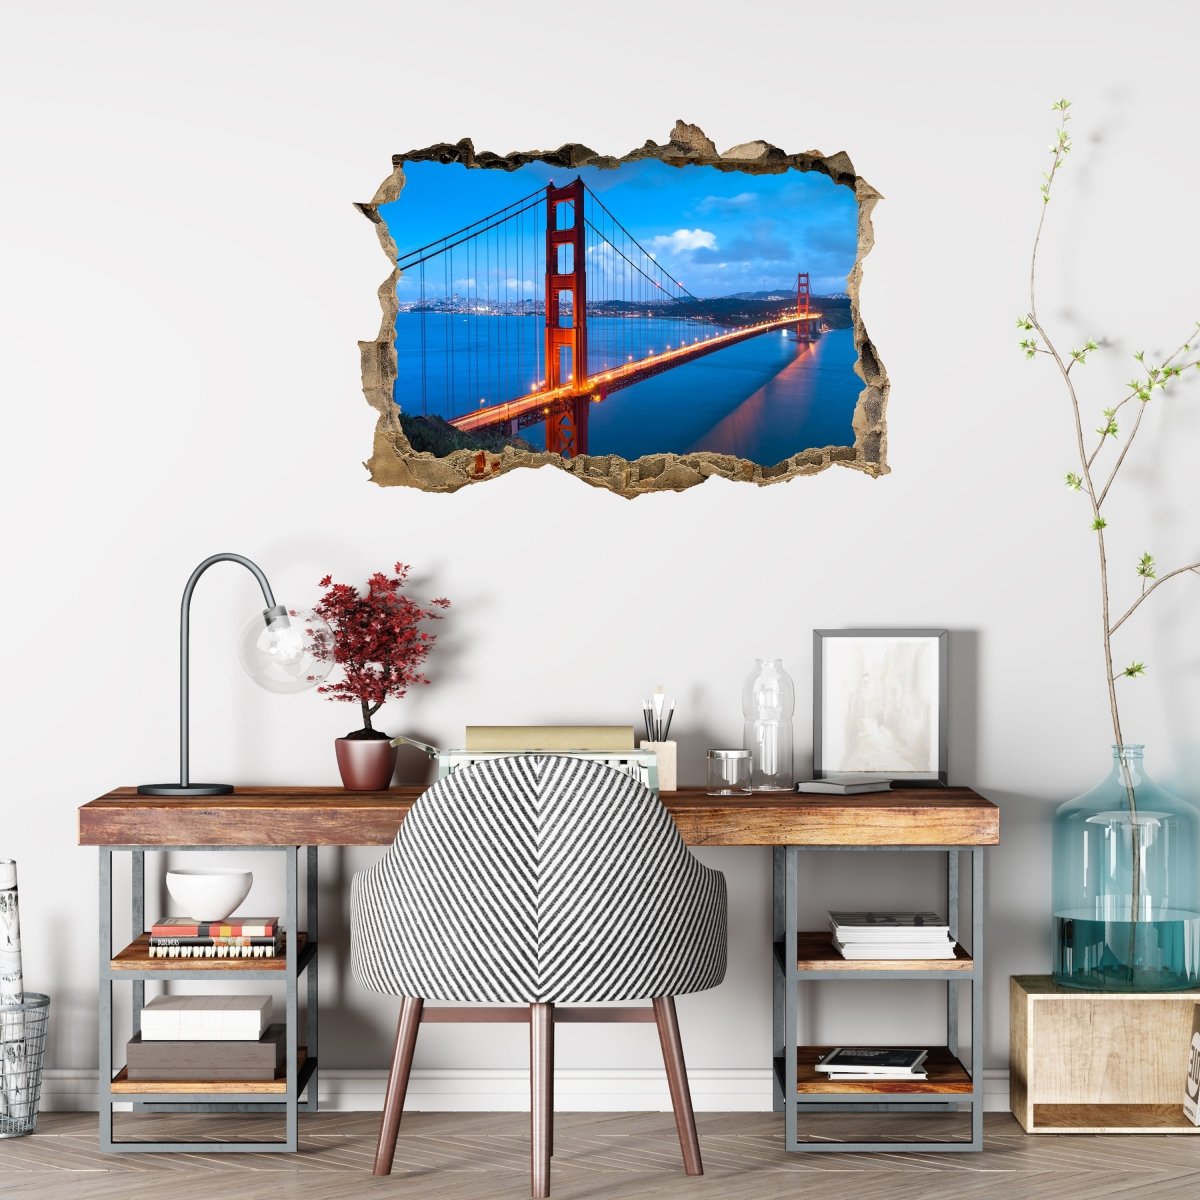 3D Wall Sticker Golden Gate Bridge - Wall Decal M0234